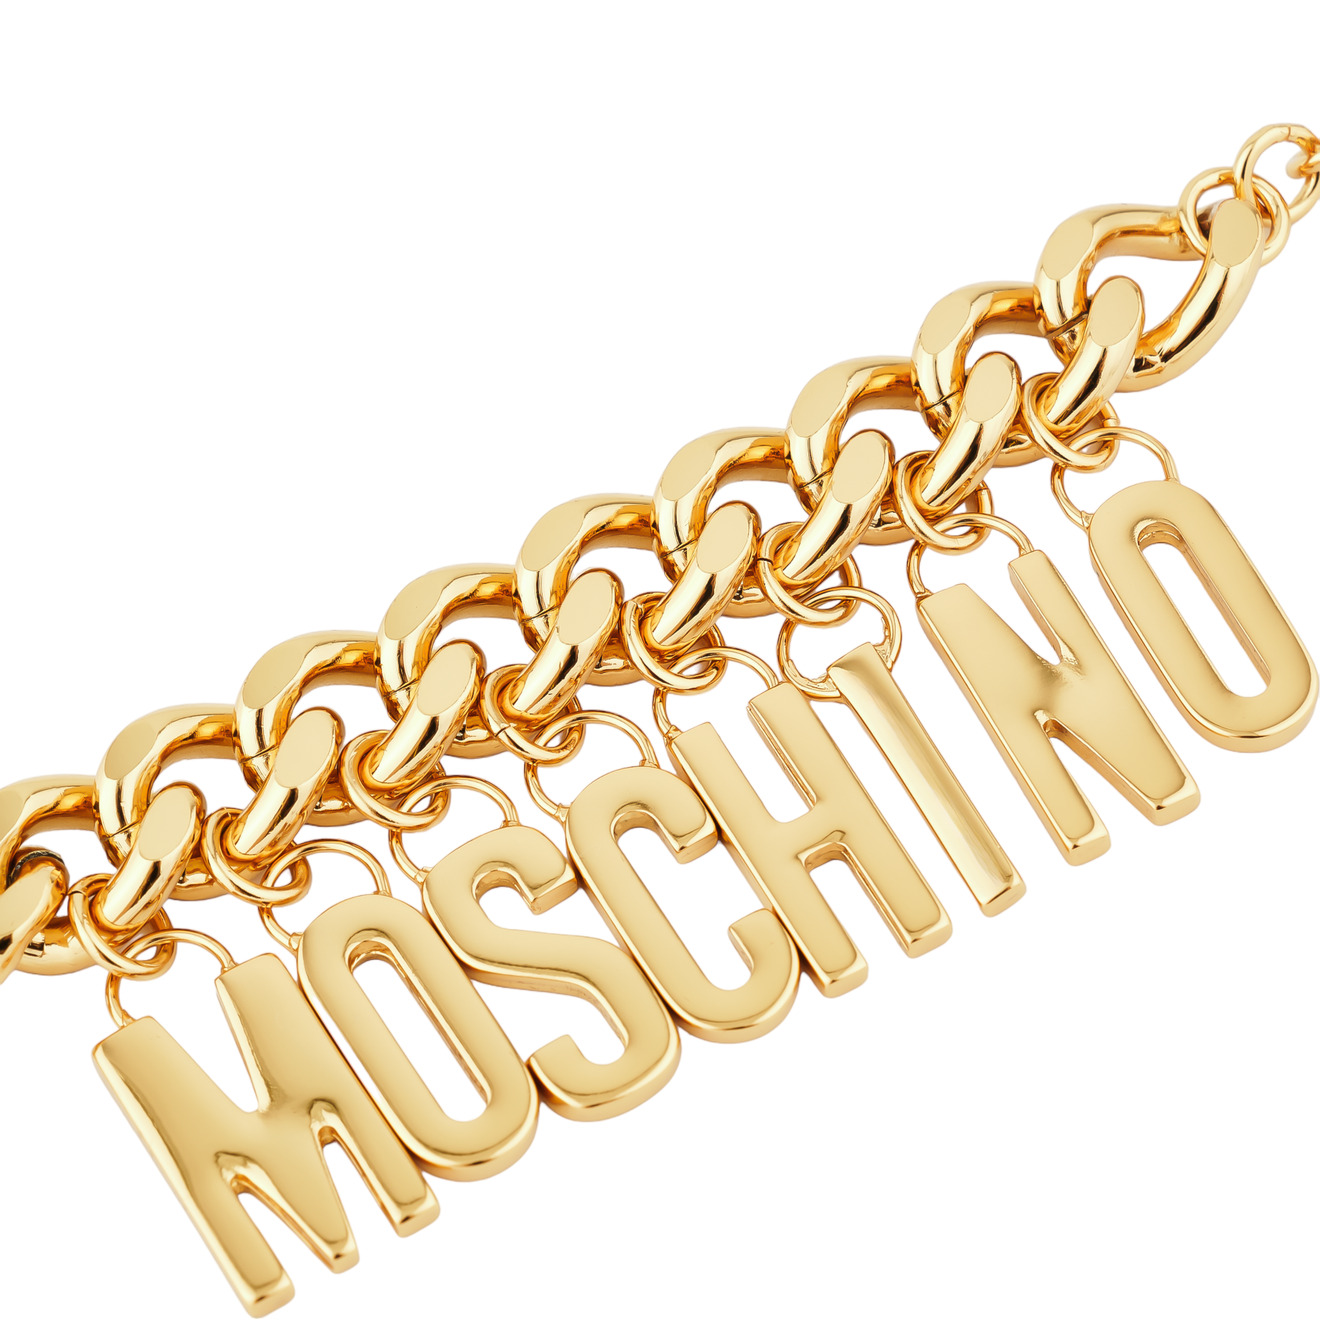 Moschino Позолоченный браслет-цепь с глянцевыми буквами бренда фото